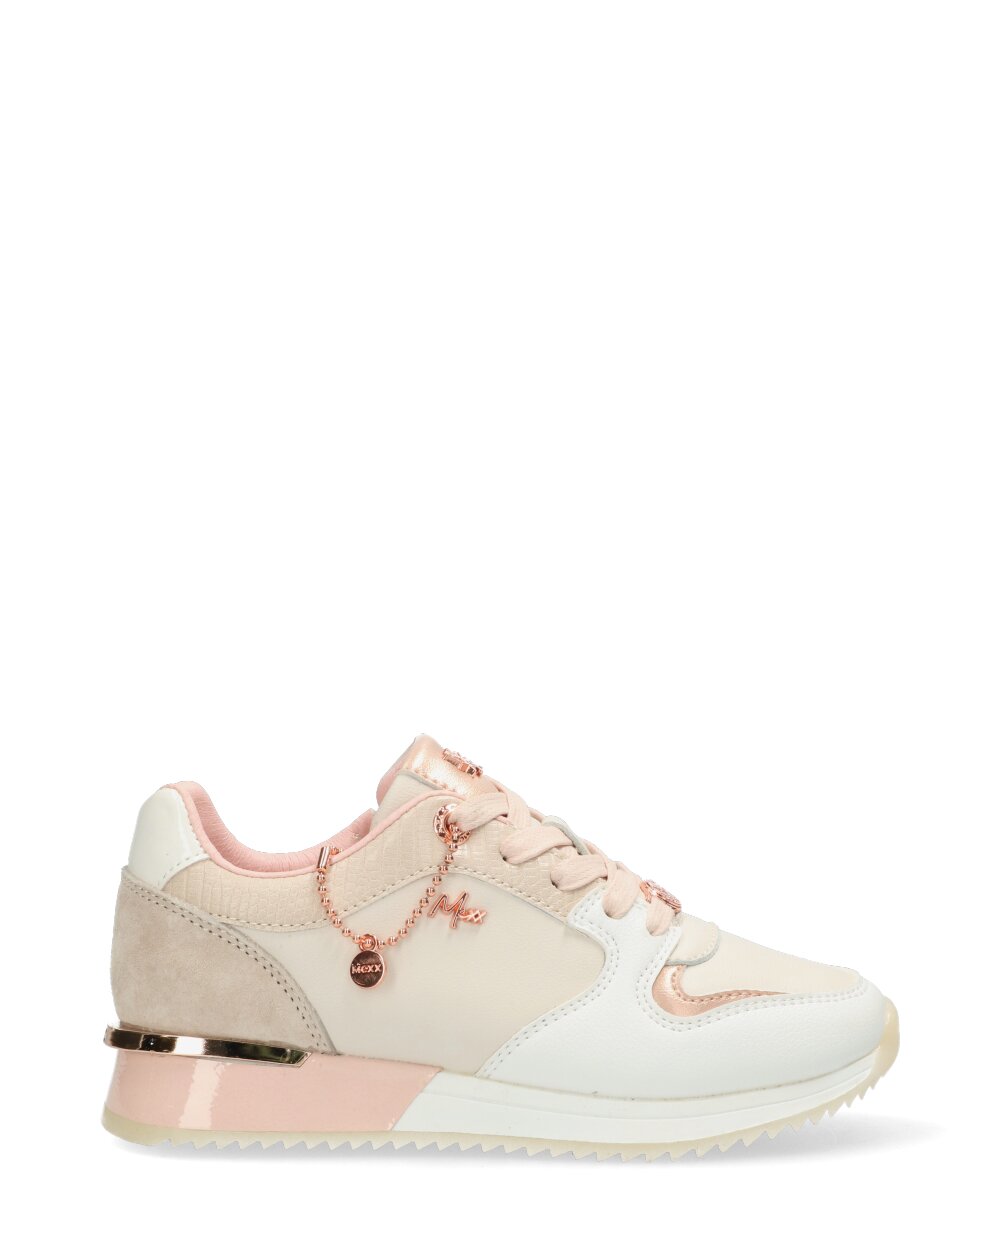 Mexx Sneaker Fleur Mini Meisjes - Beige/Pink - Maat 31